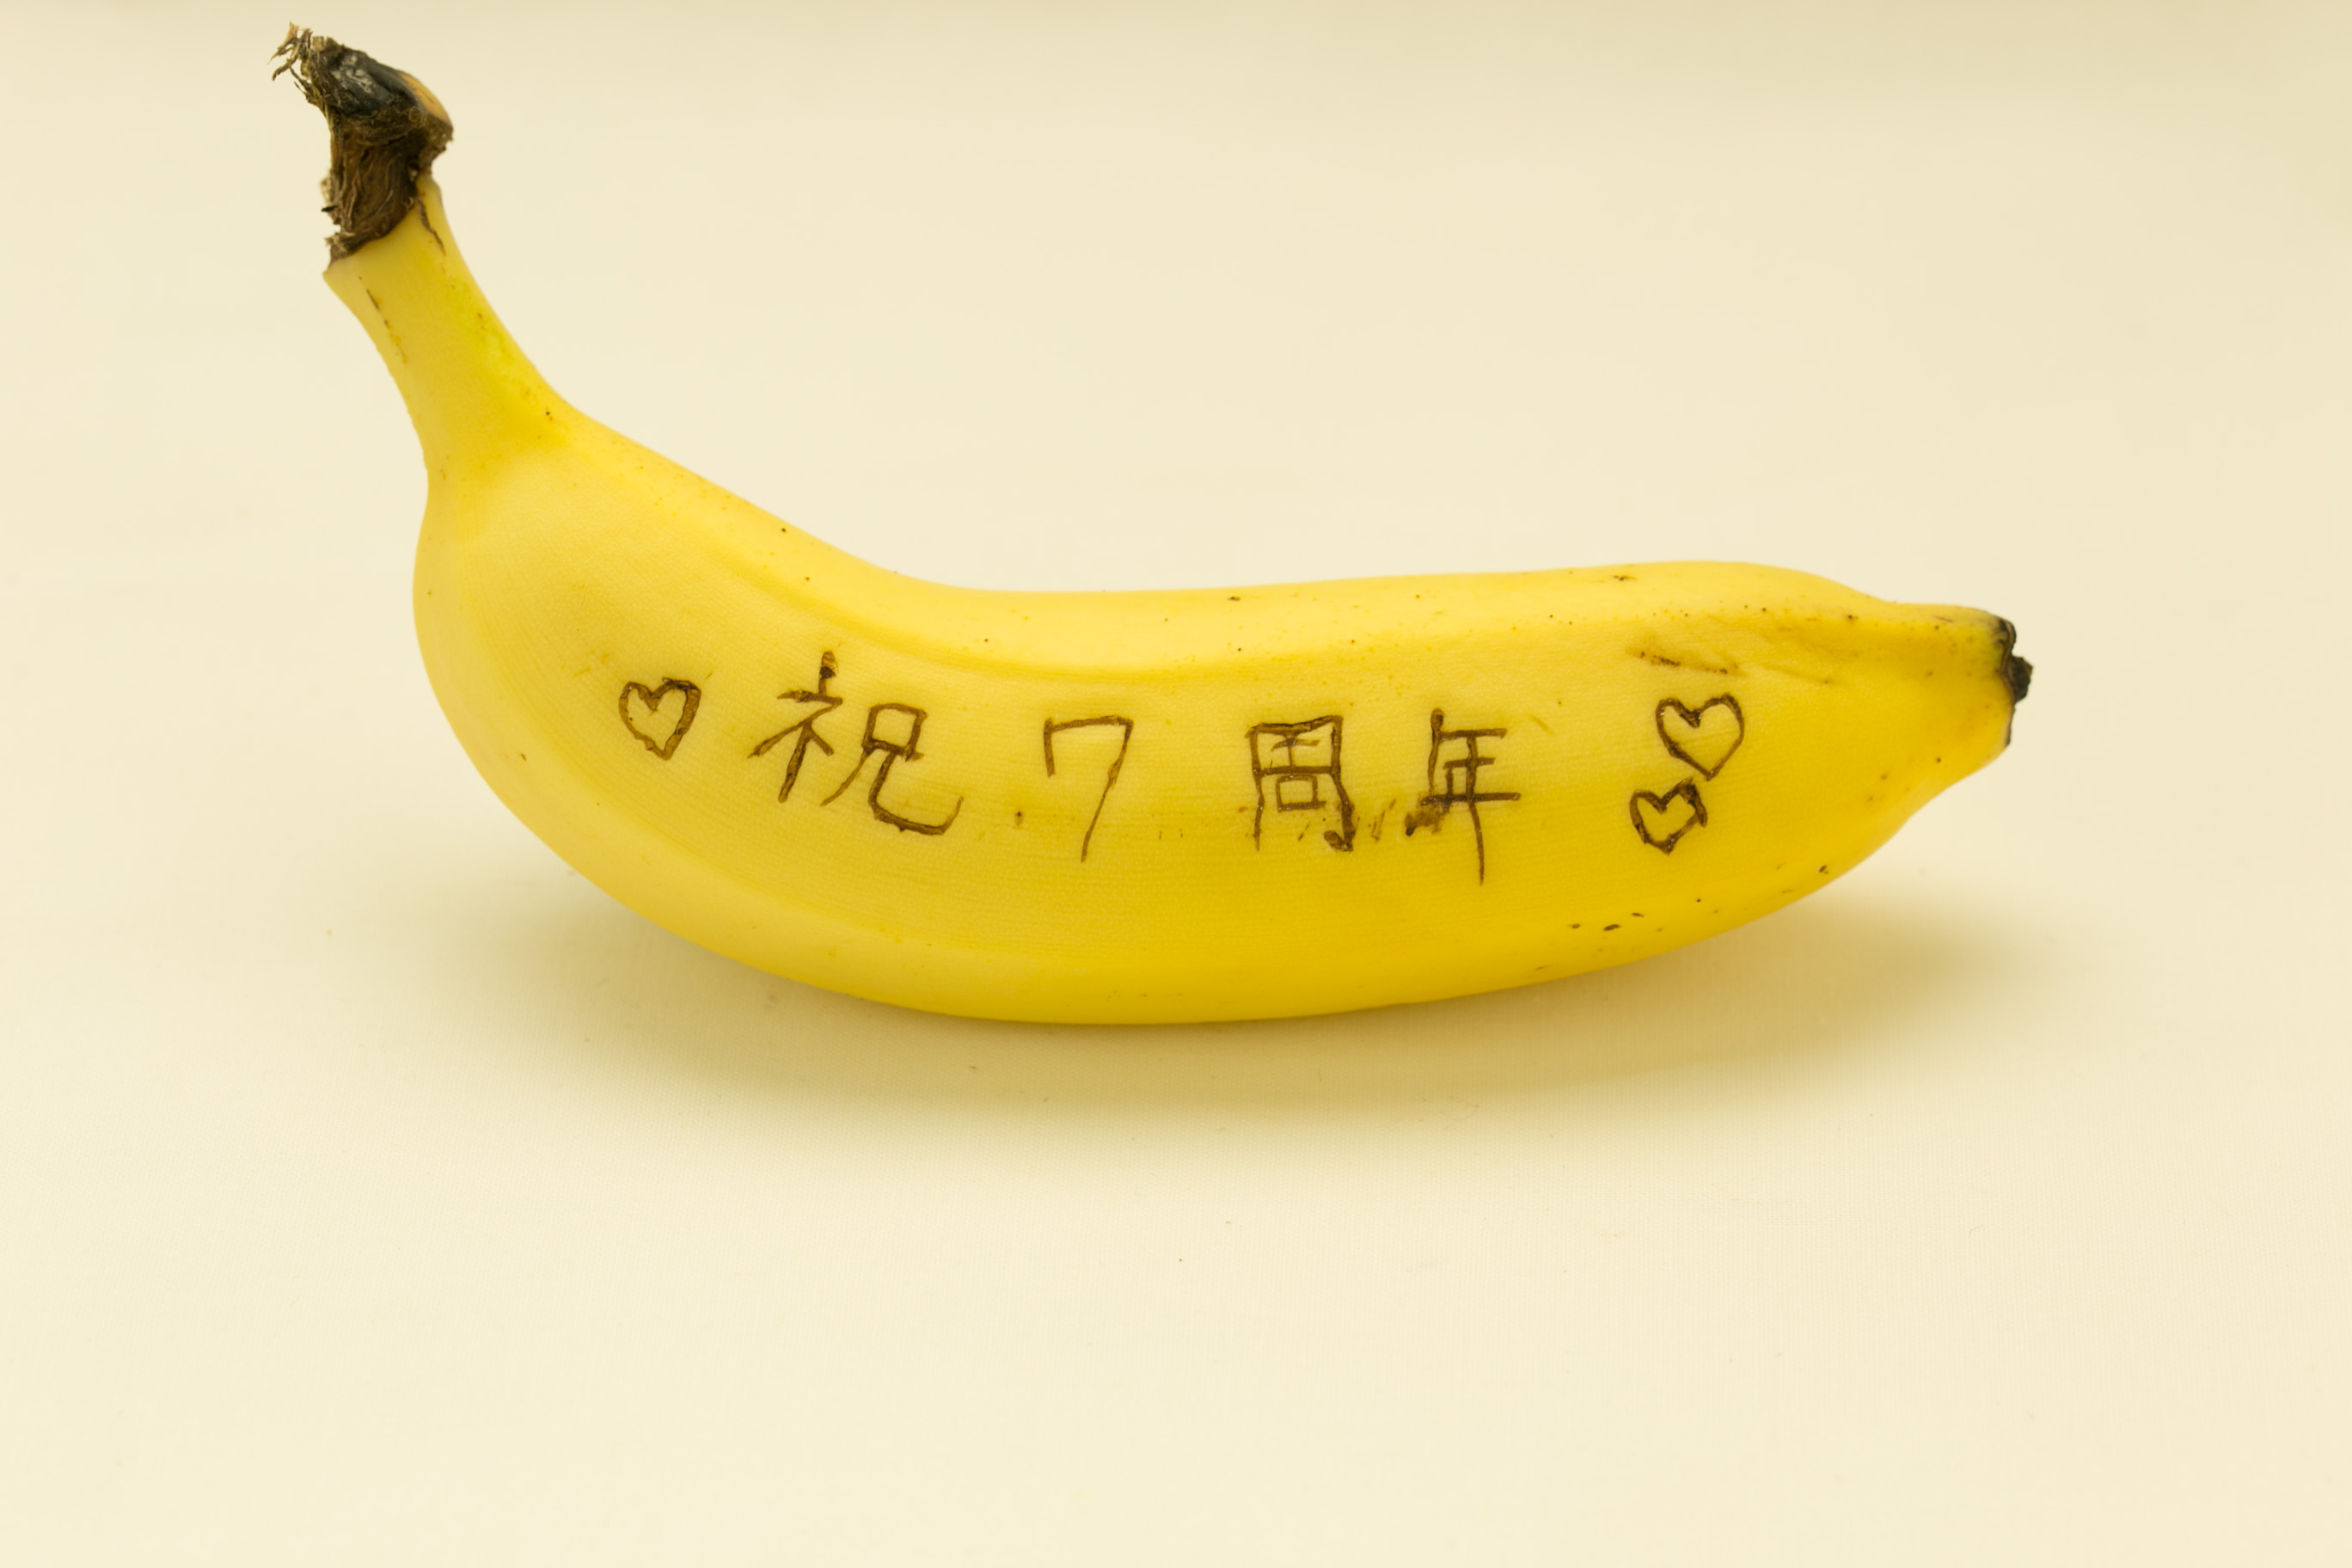 メッセージバナナの作り方。日頃の感謝の気持ちを表現してみた